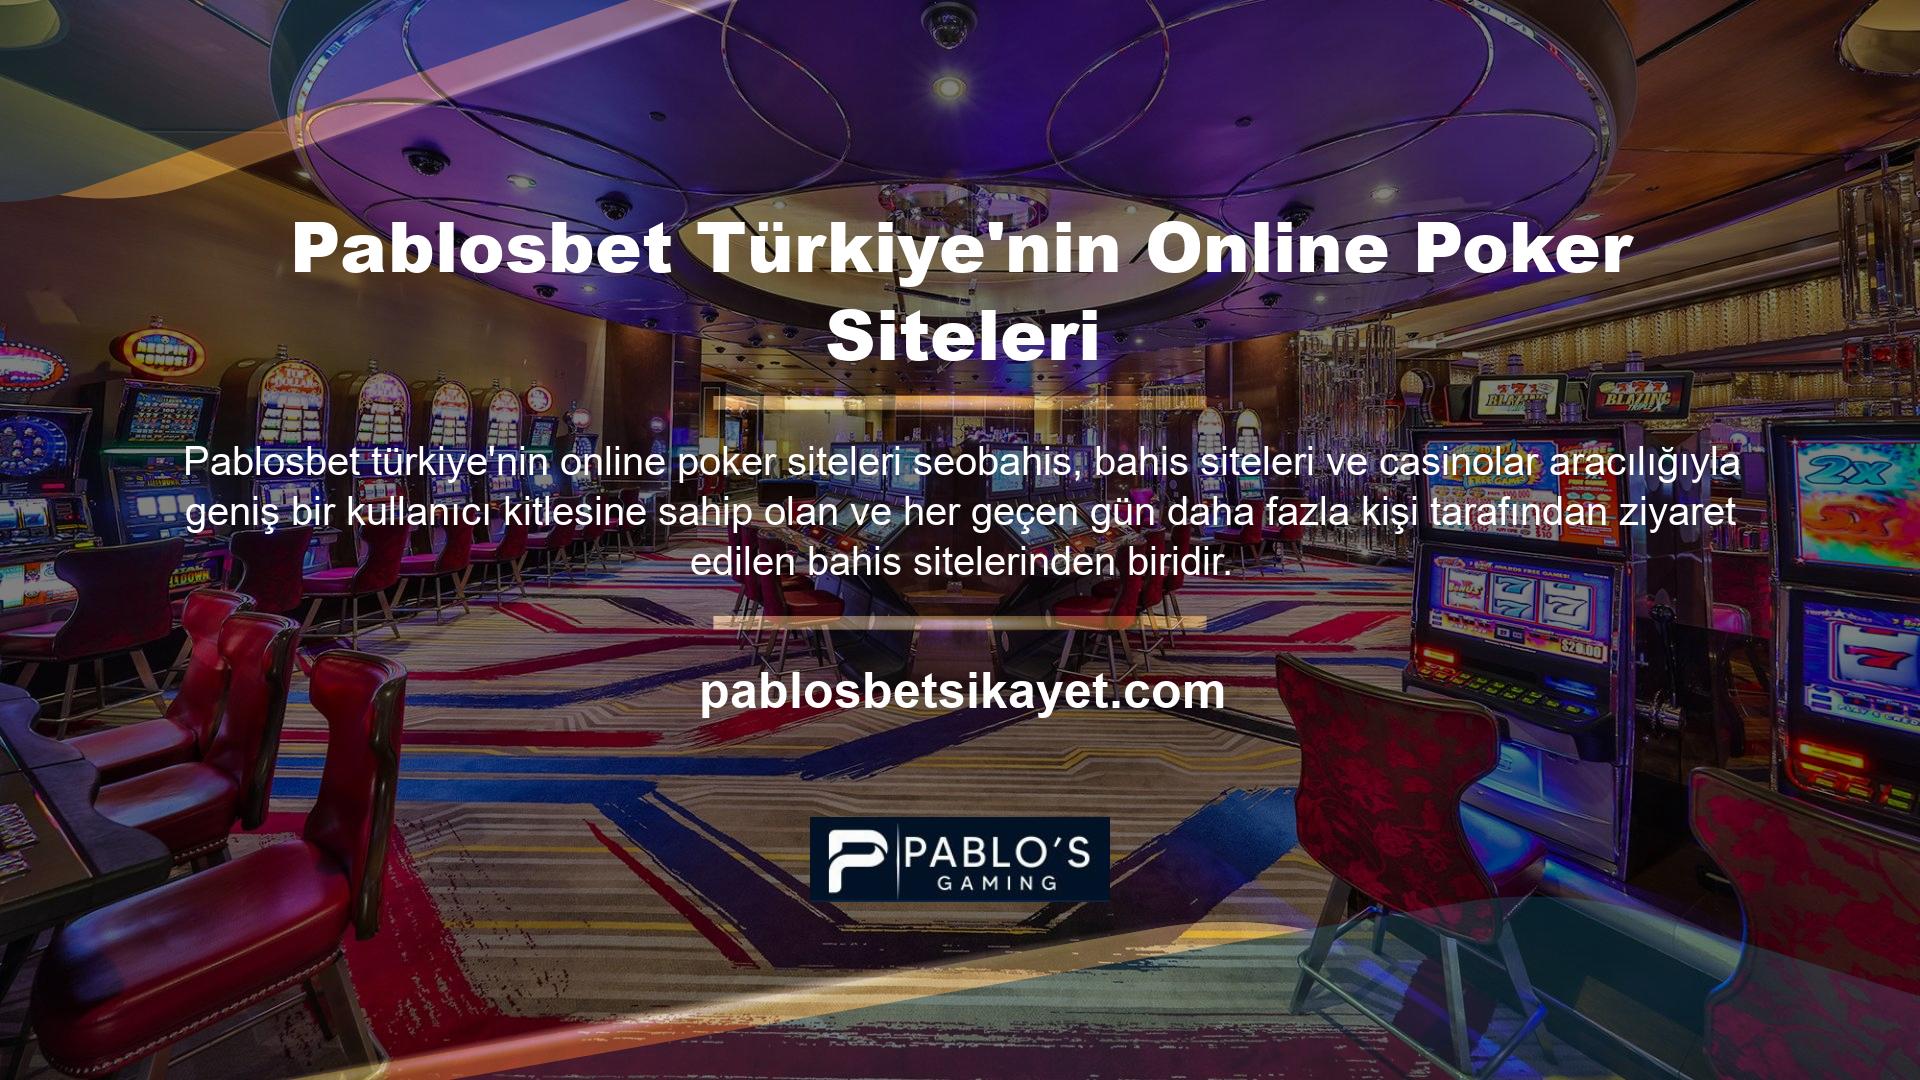 Pablosbet casino ve casino sitelerine göz atarak üyelik teklifleri oluşturabilir ve Pablosbet sunduğu fırsatlardan yararlanabilirsiniz